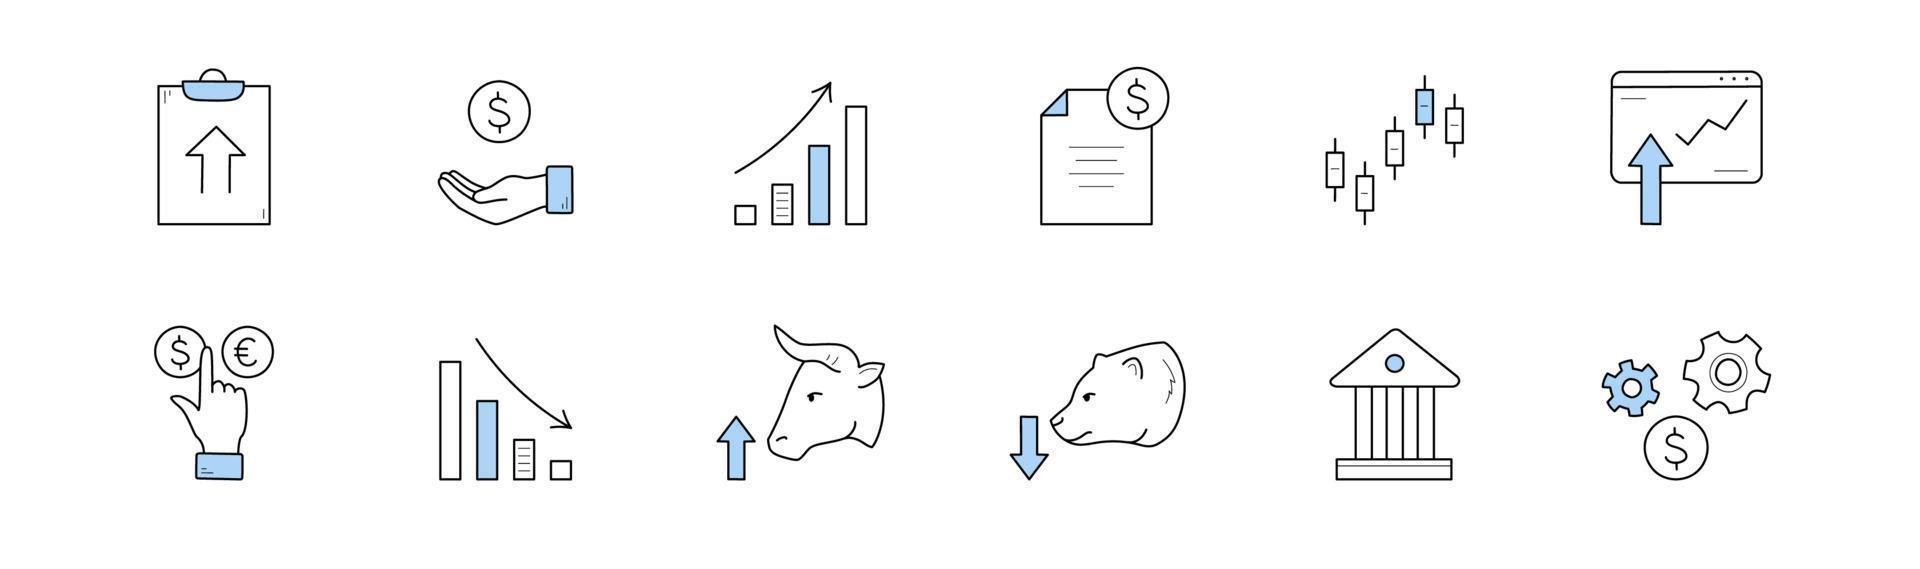 ícones de doodle do mercado de ações, conjunto de vetores isolados